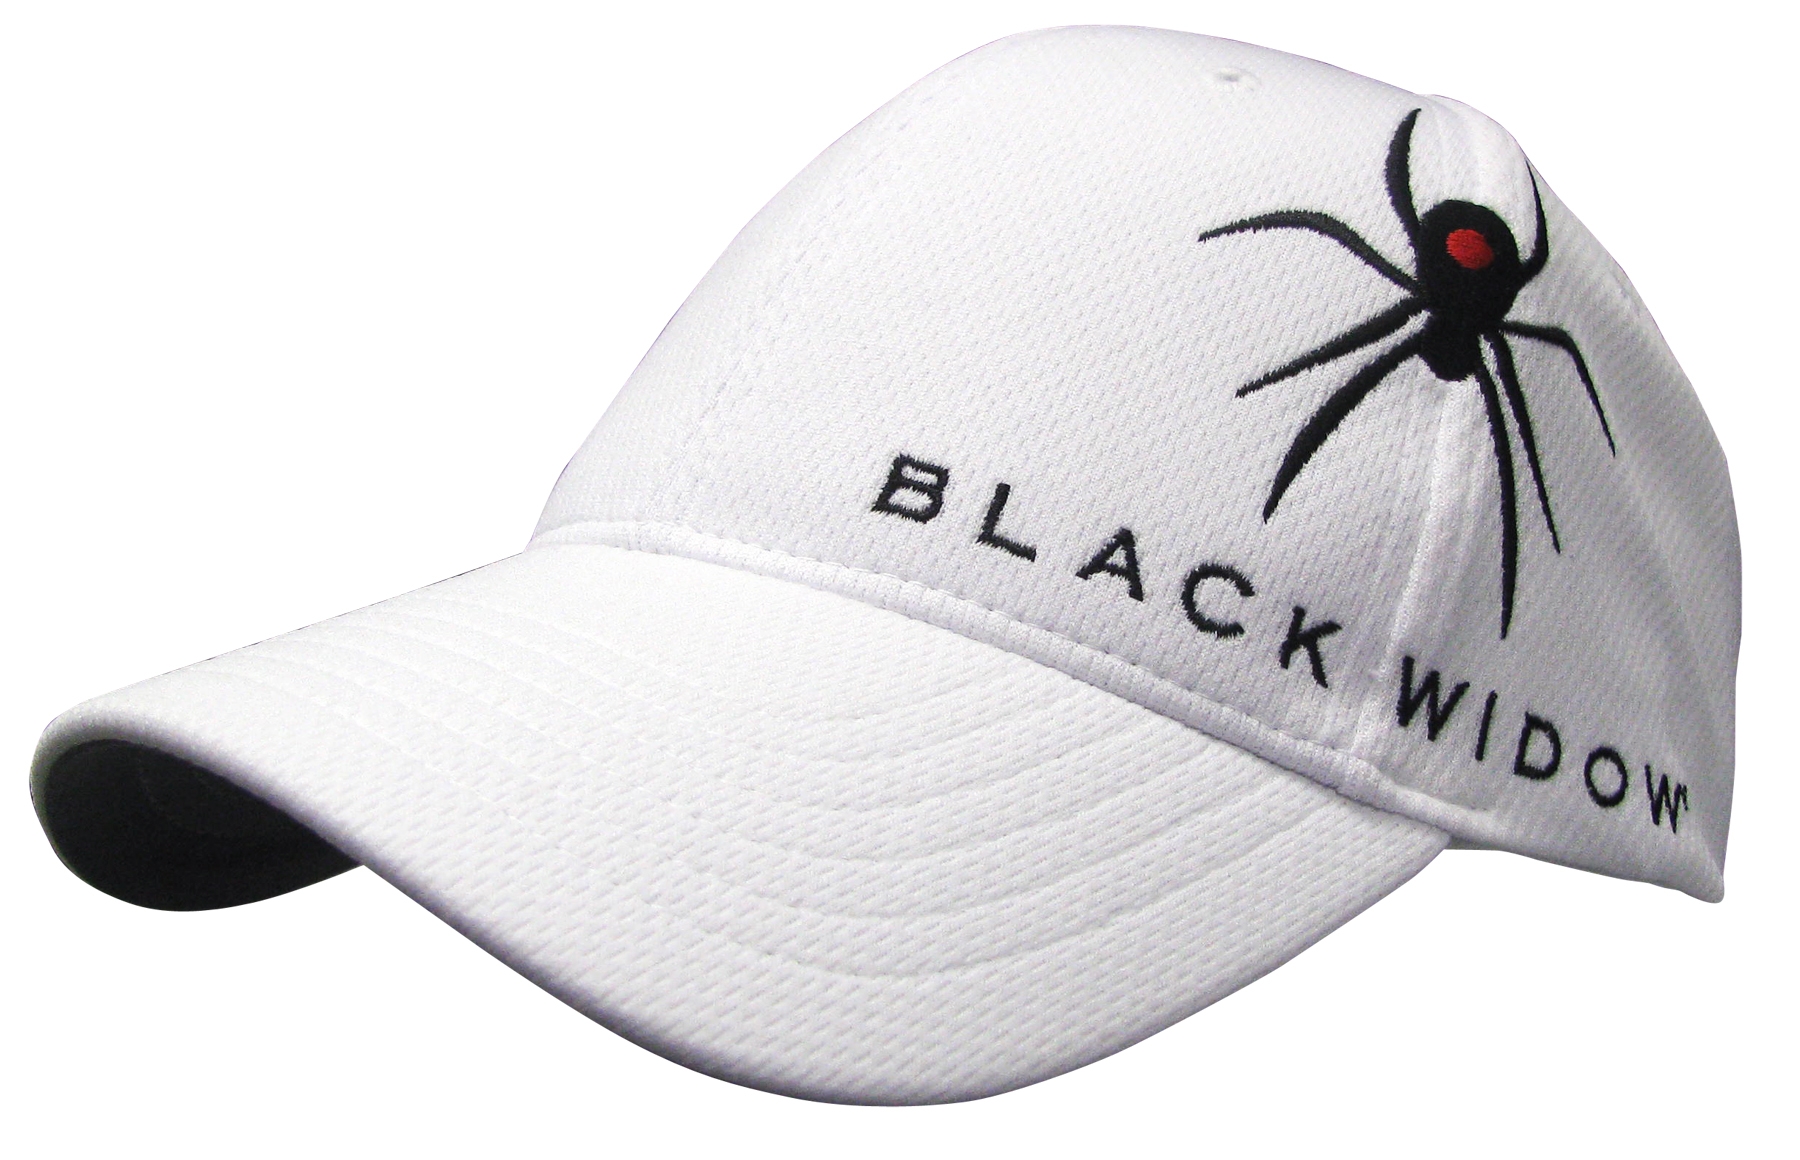 Black Widow launches headwear range